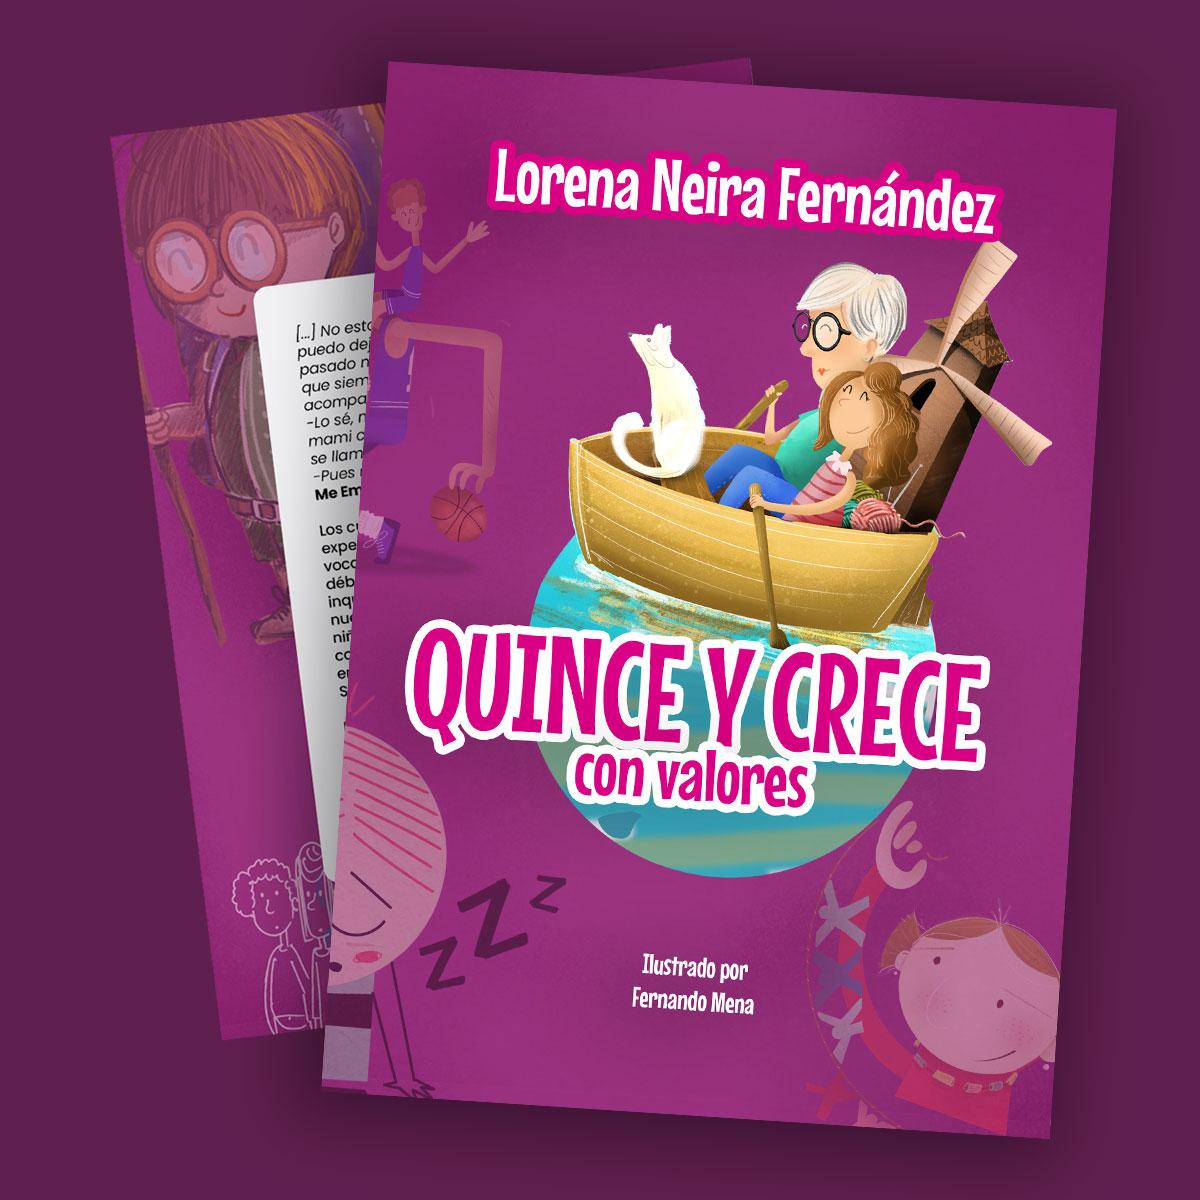 Quince y Crece lorena Neira Fernandez